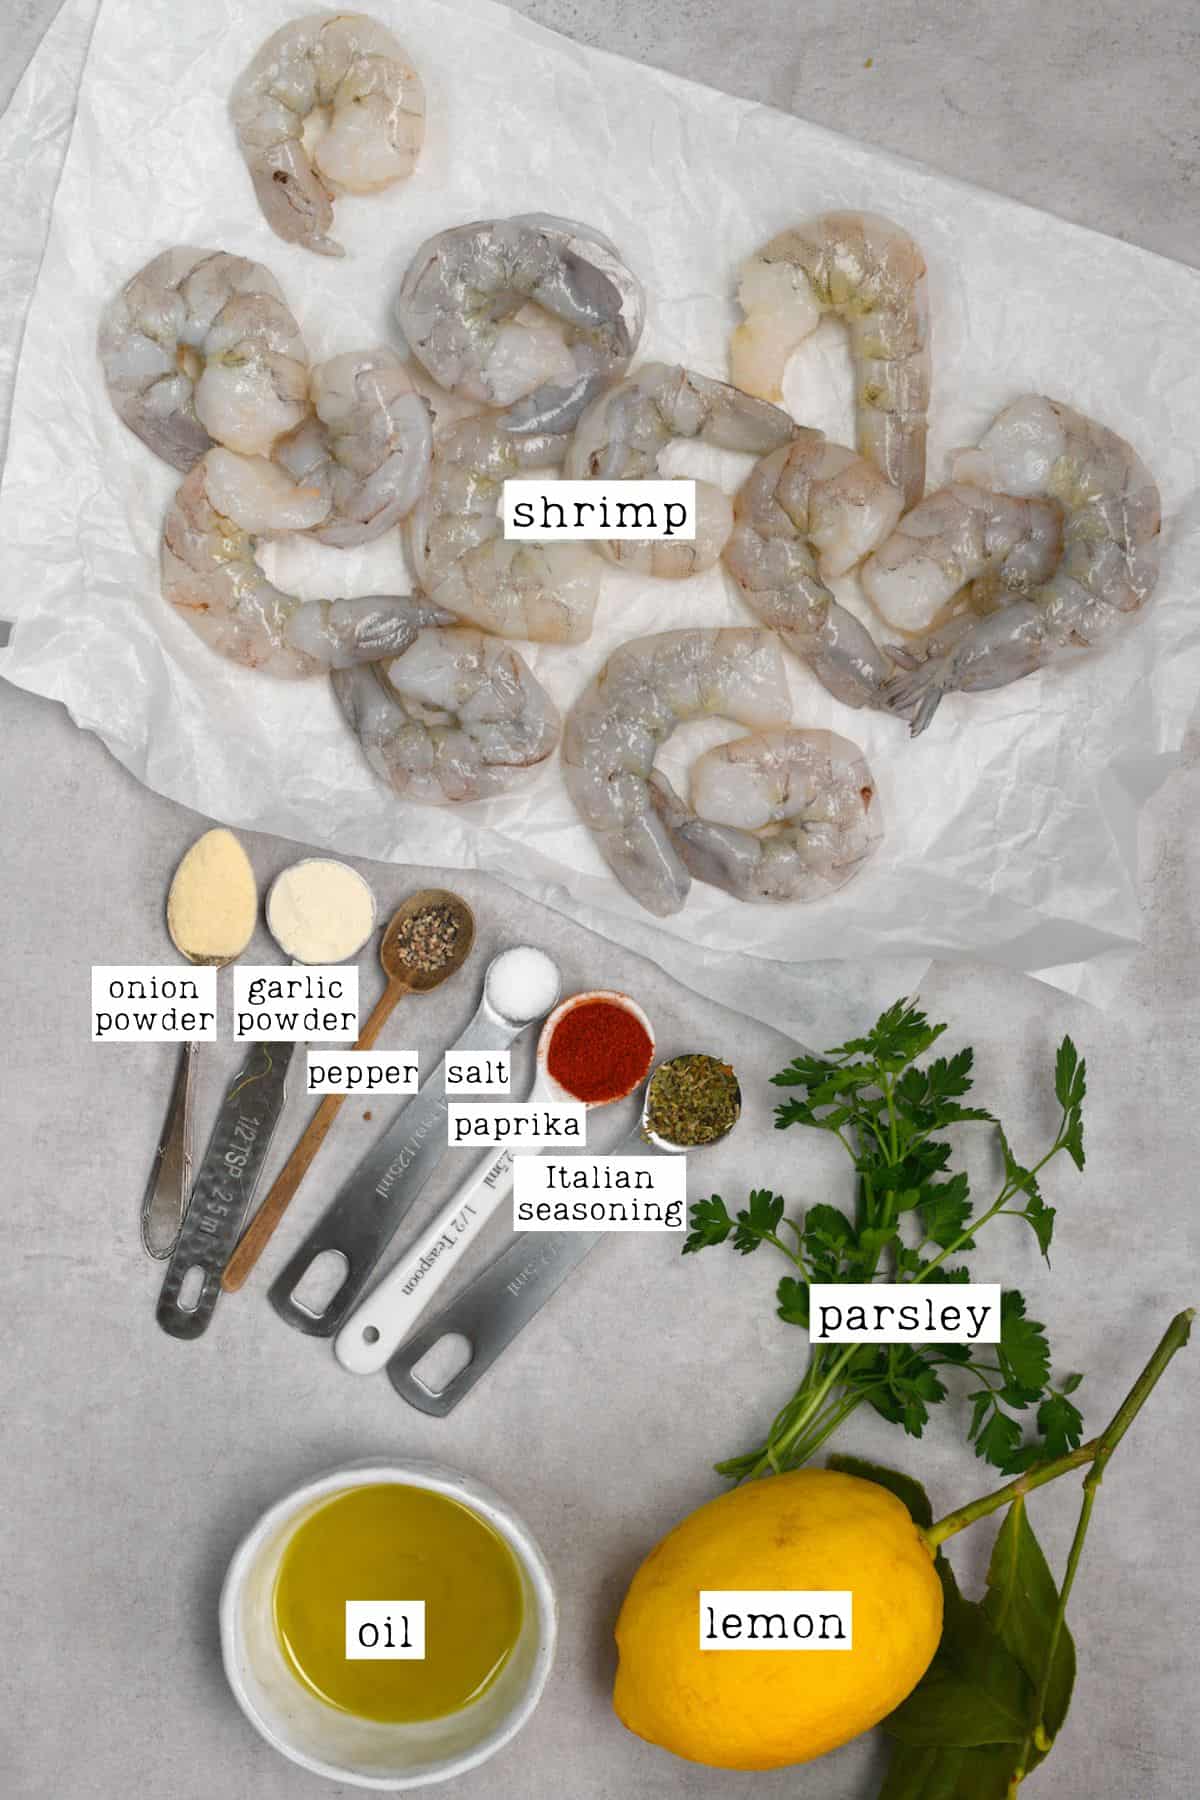 Ingredients for air fryer shrimp